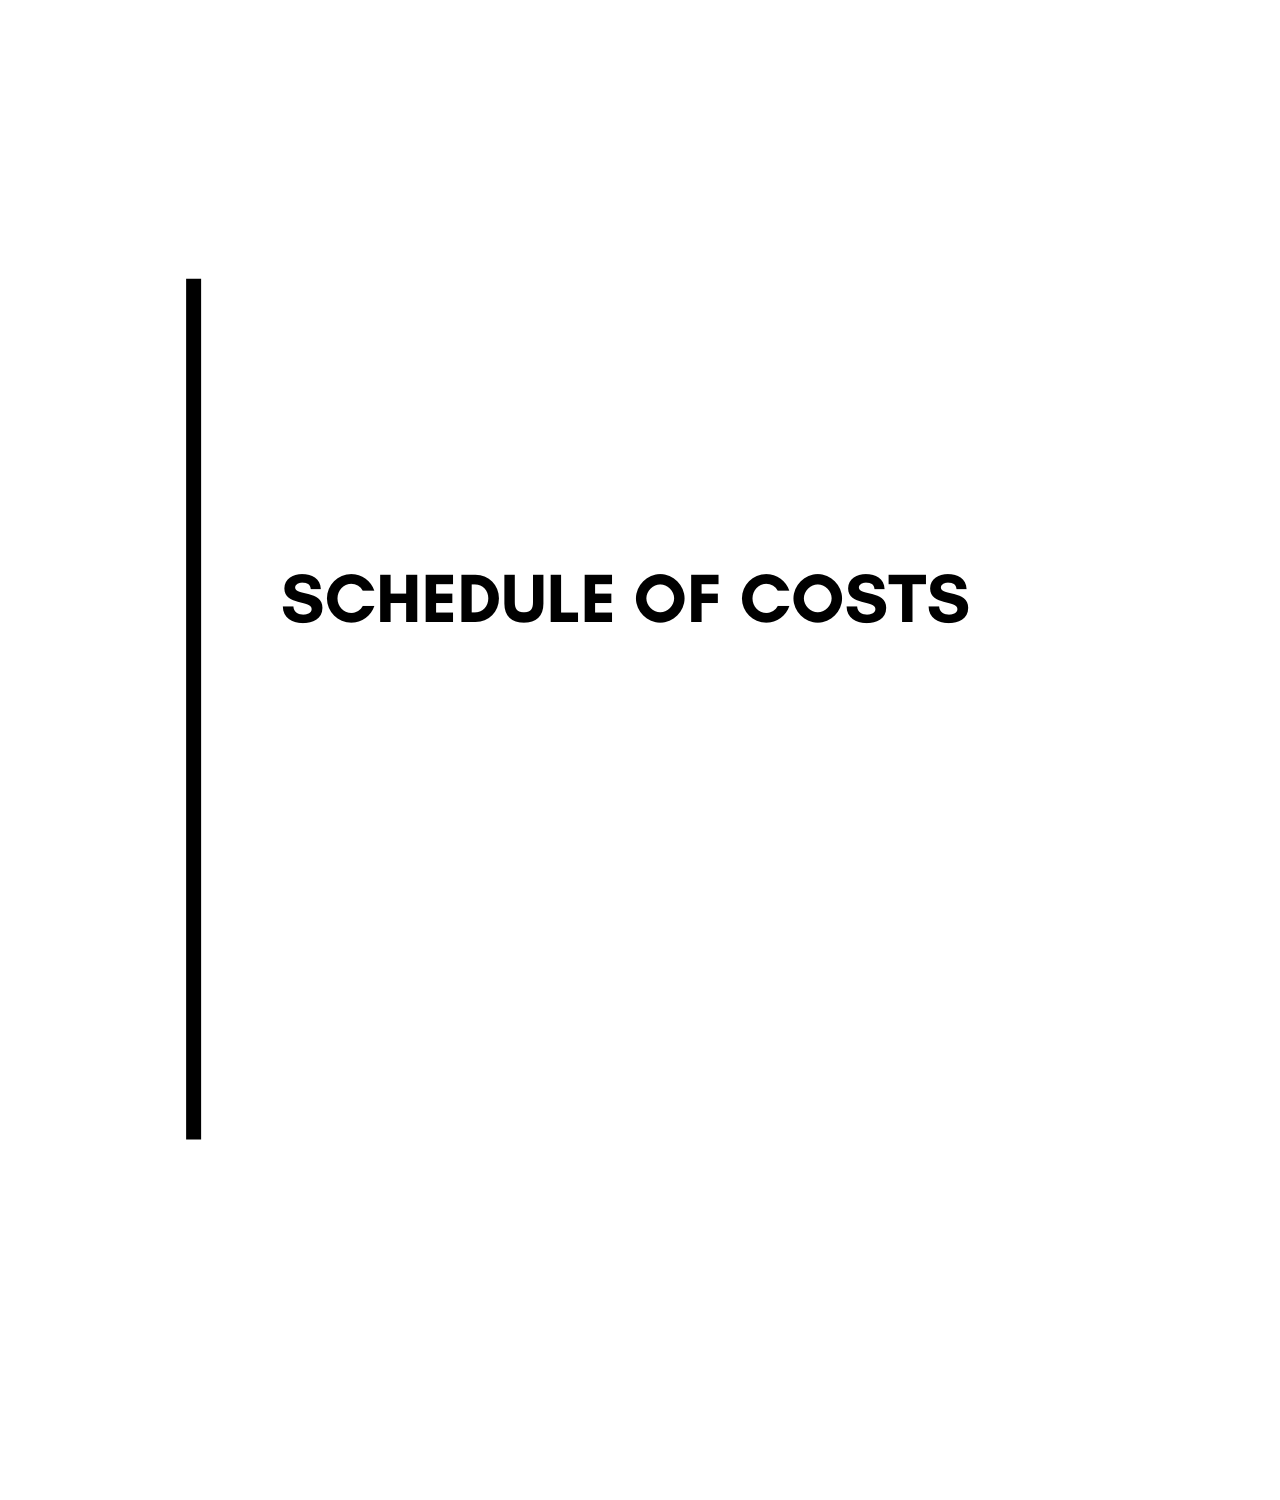 Schedule of Costs